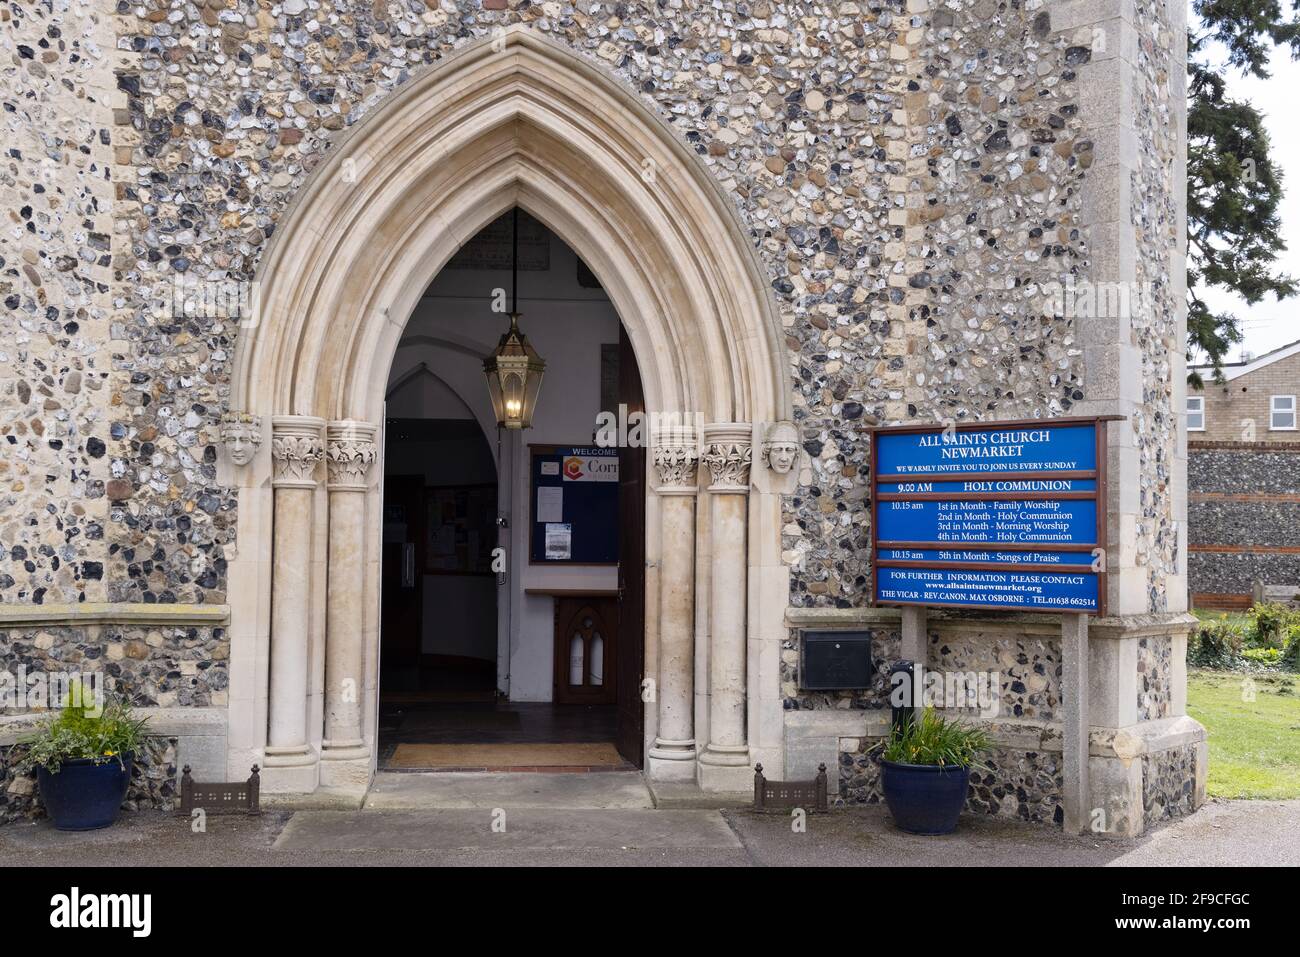 Church Entrance UK; die offene Kirchentür und das Schild, All Saints Church, Newmarket Suffolk UK Stockfoto